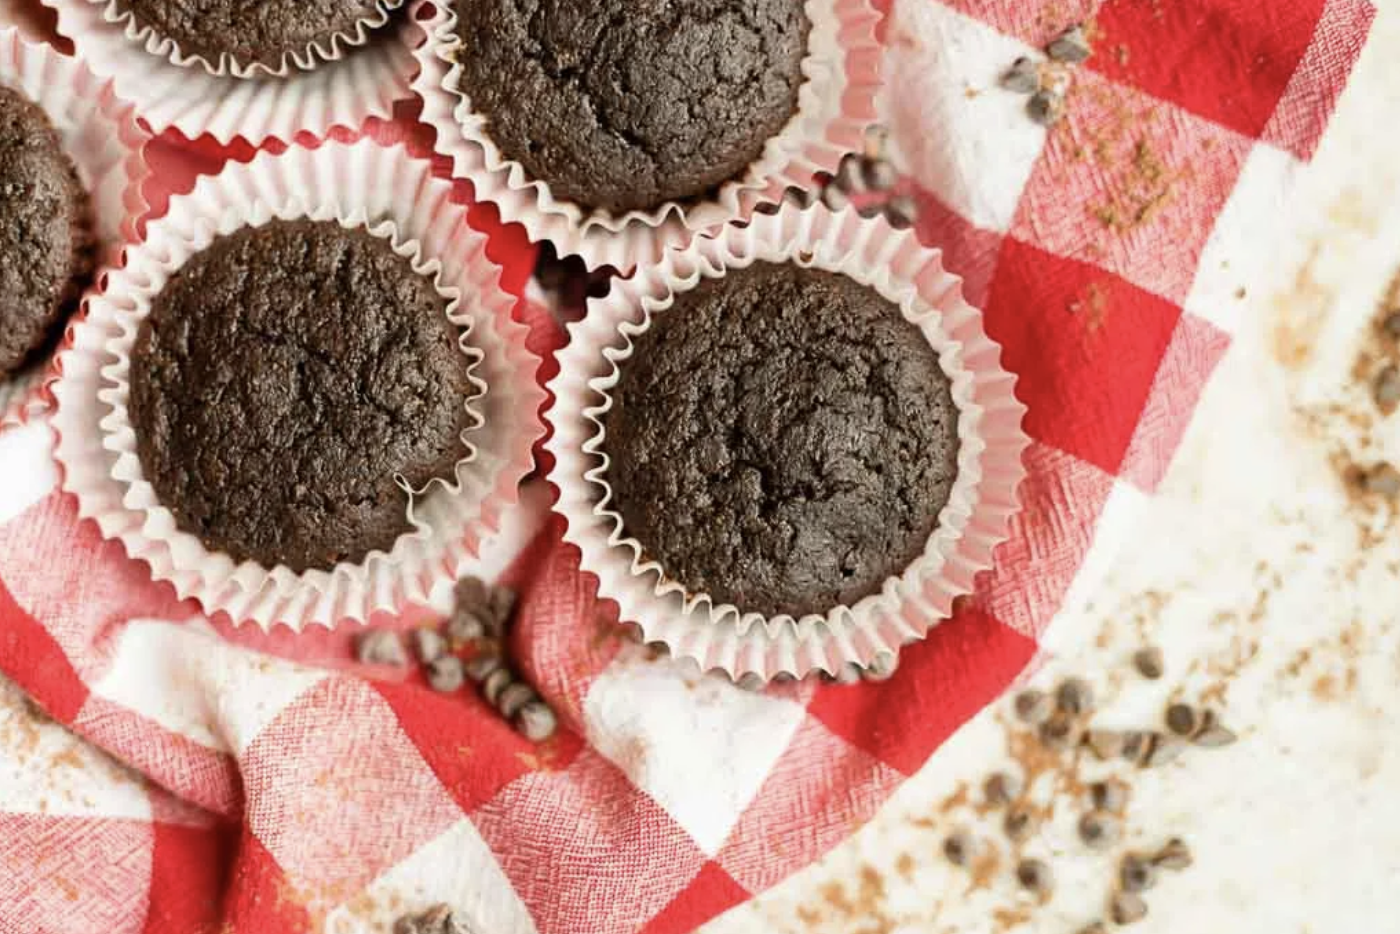 Baking Bliss: Raspberry White Chocolate Muffins Worth Every Bite